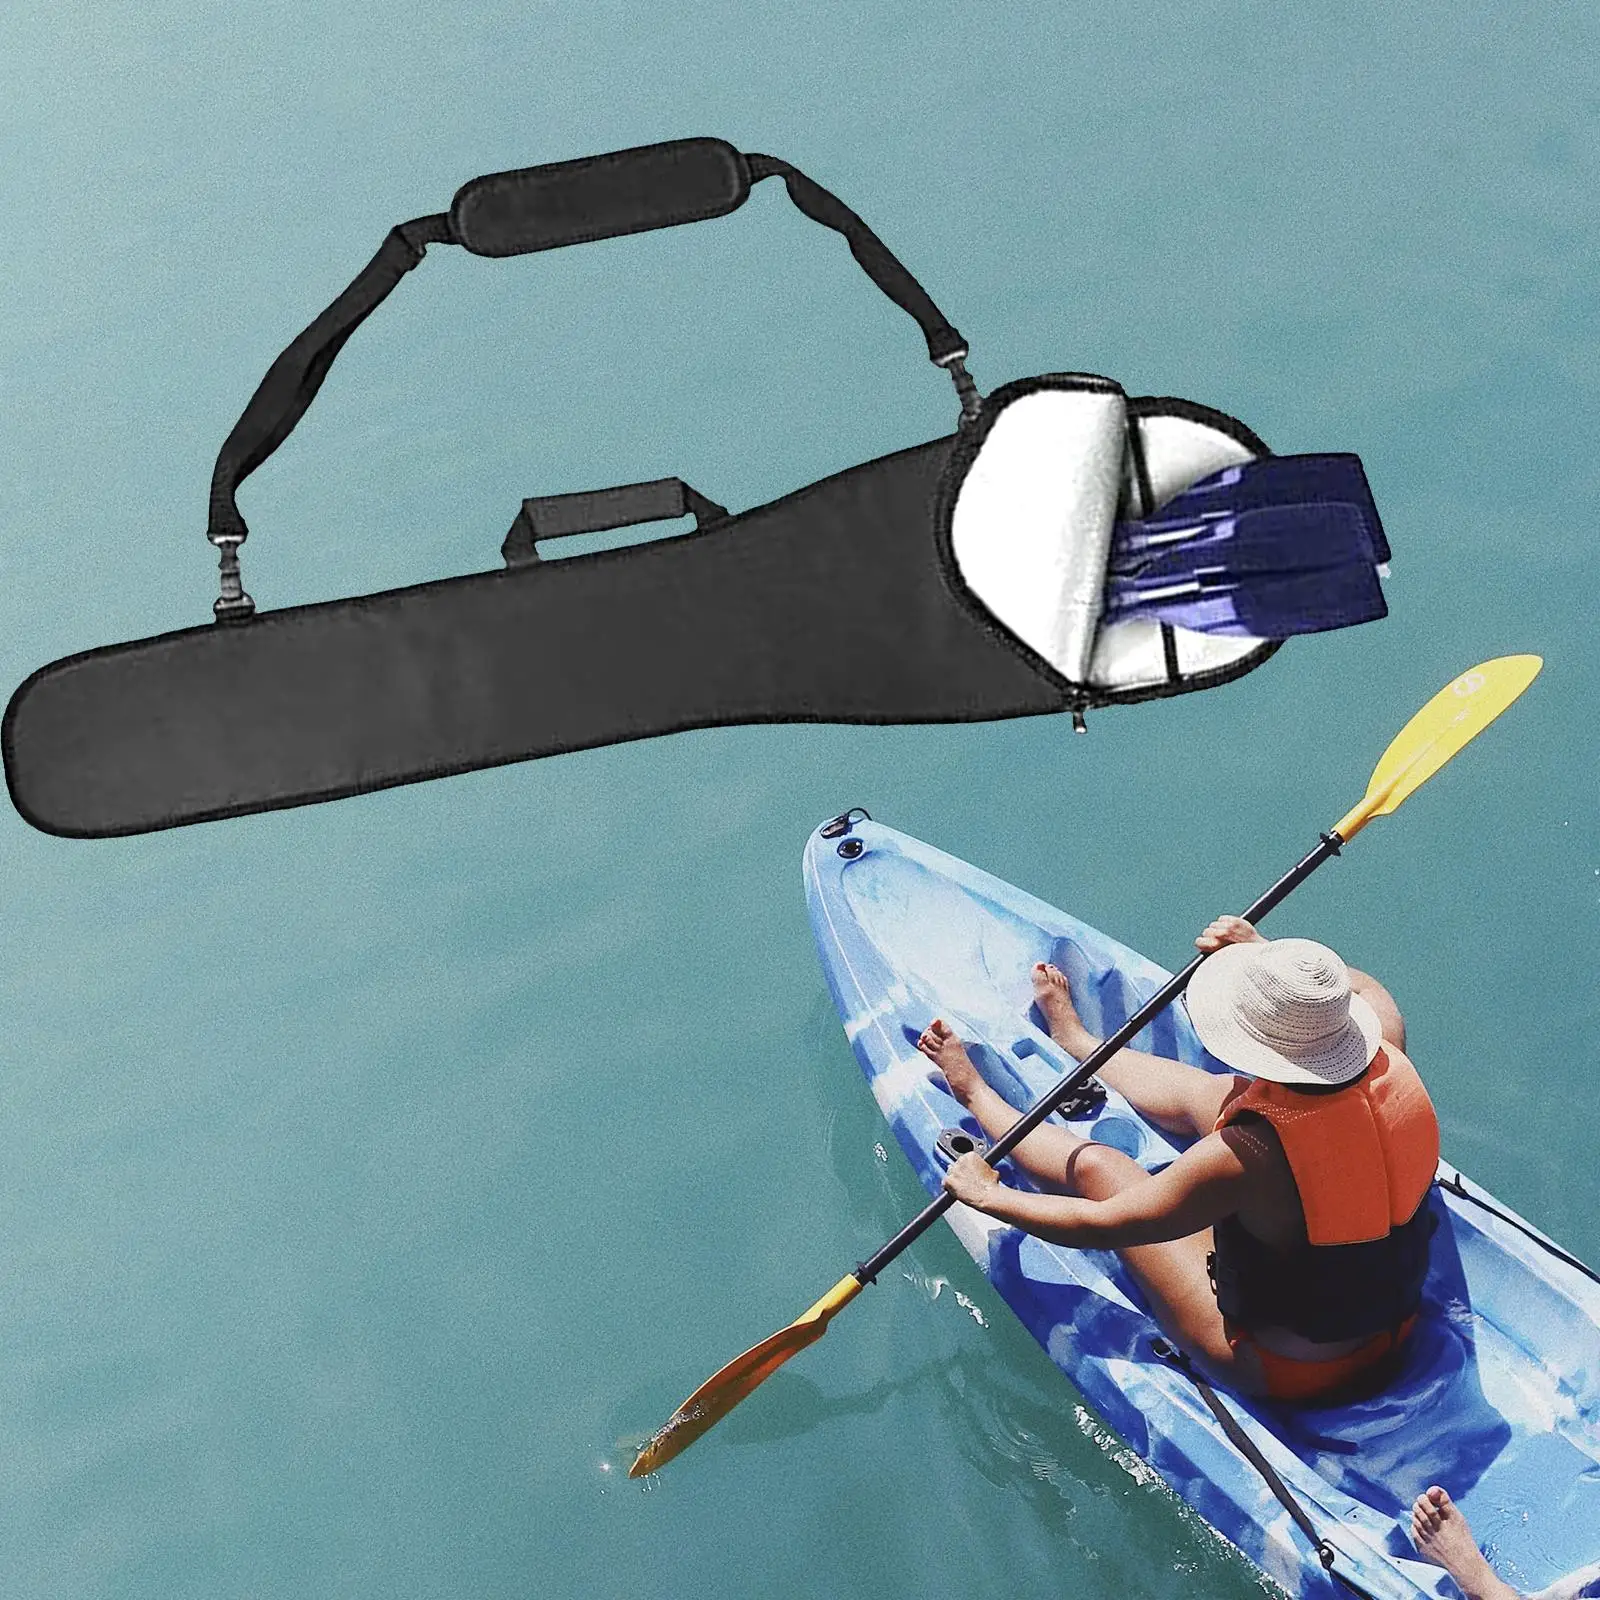 Kayak Paddles Bag Kayaking Paddle Transportation Protective Case Boat Paddle Storage Bag for Kayak Accessories Watersports